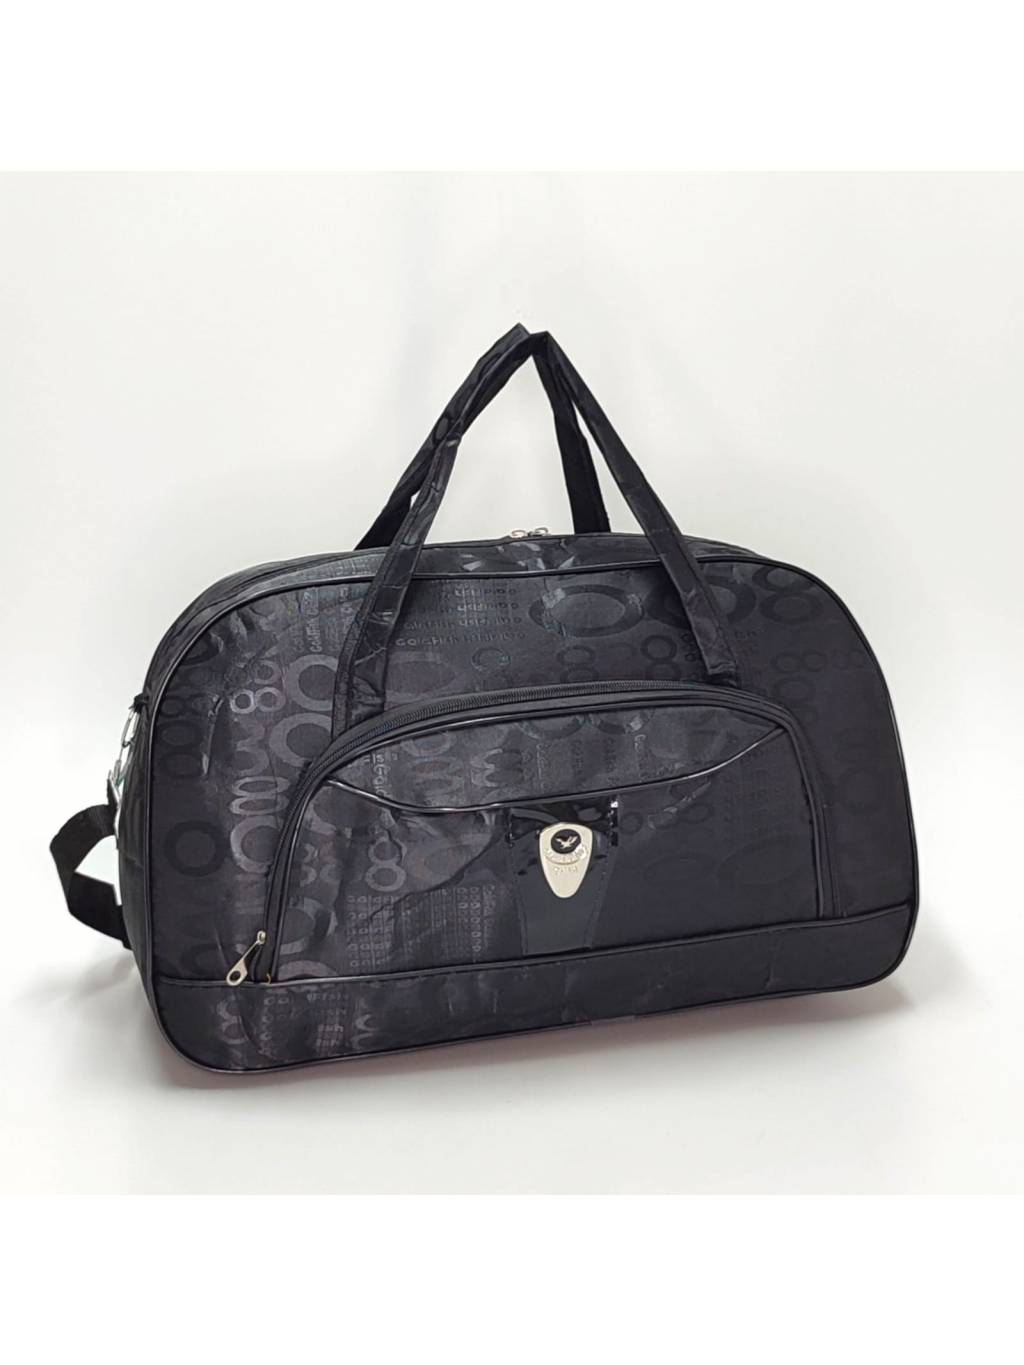 Cestovná taška B7135 2 čierna www.kabelky vypredaj (9)